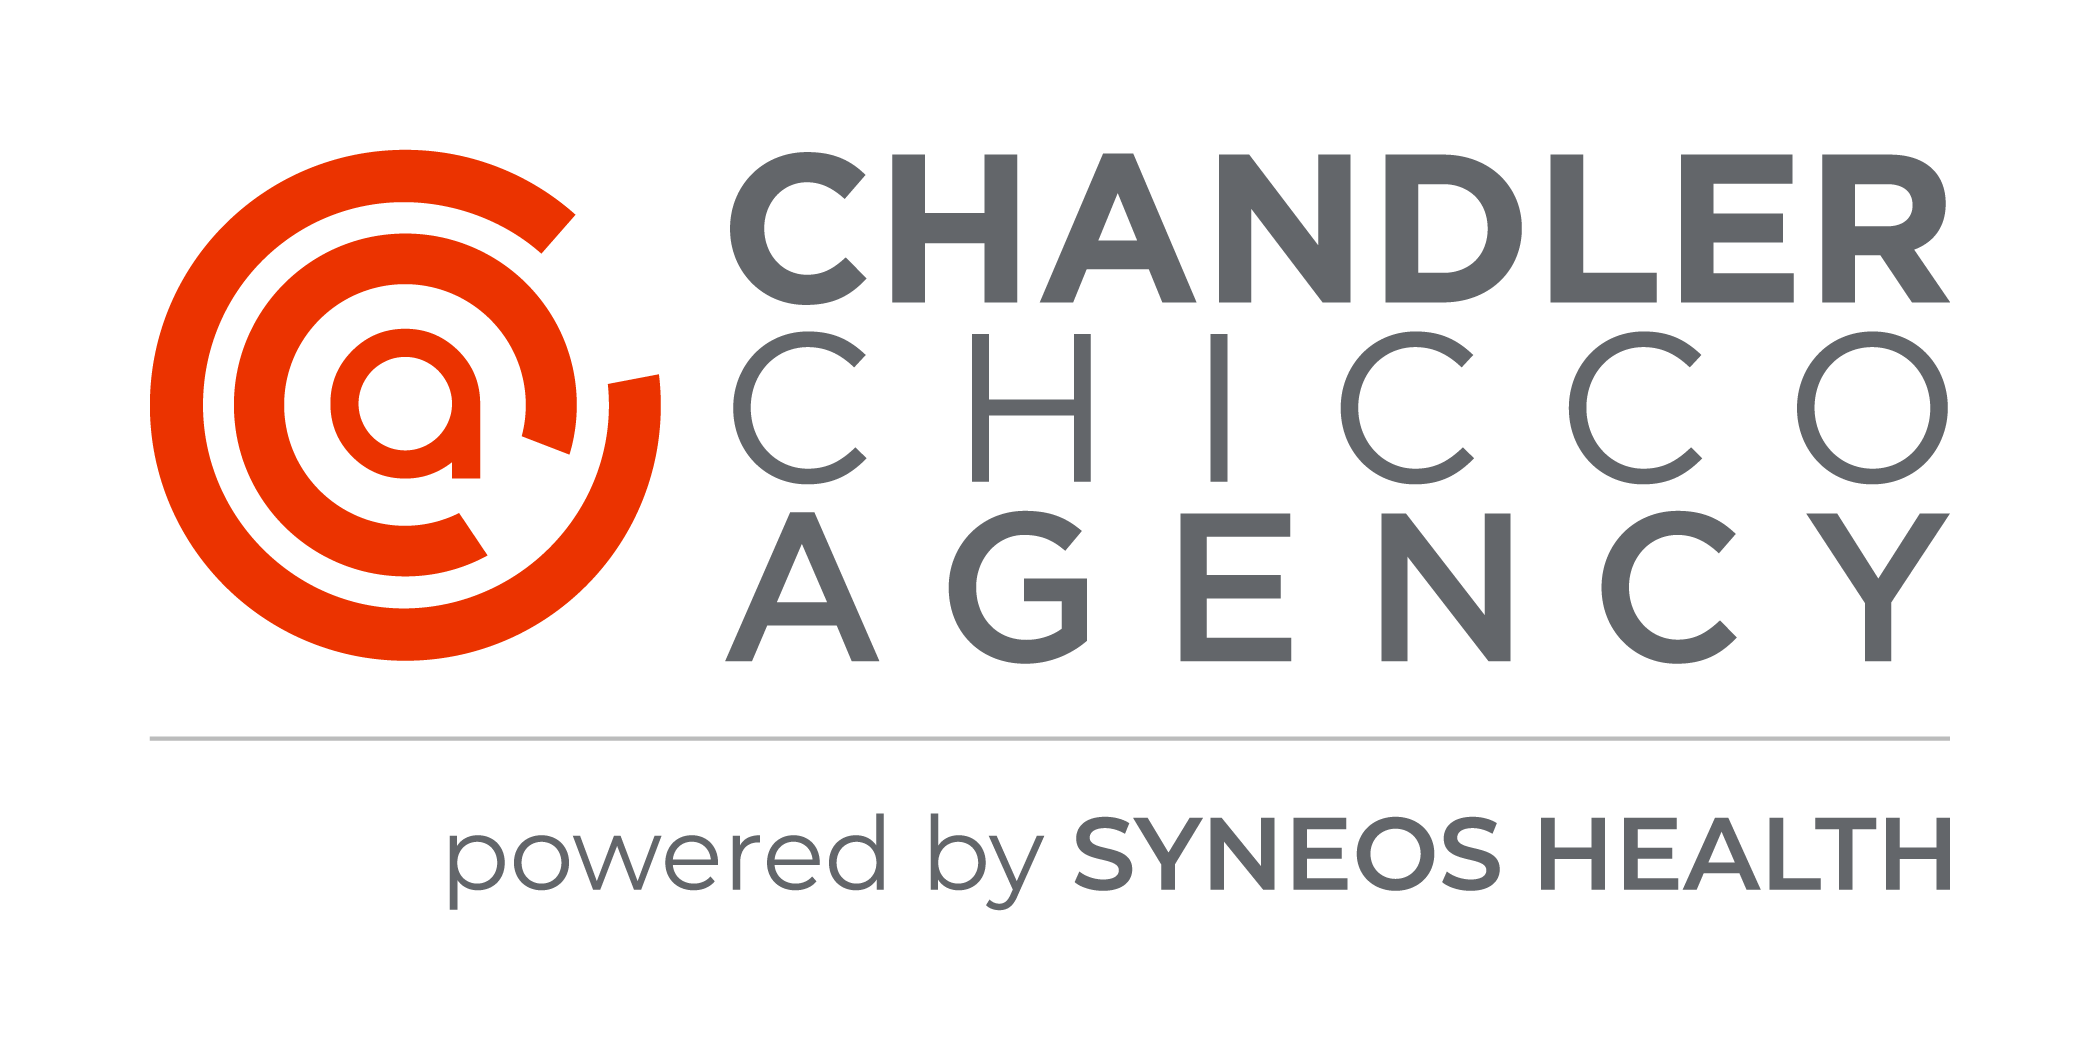 Chandler Chicco Agency logo